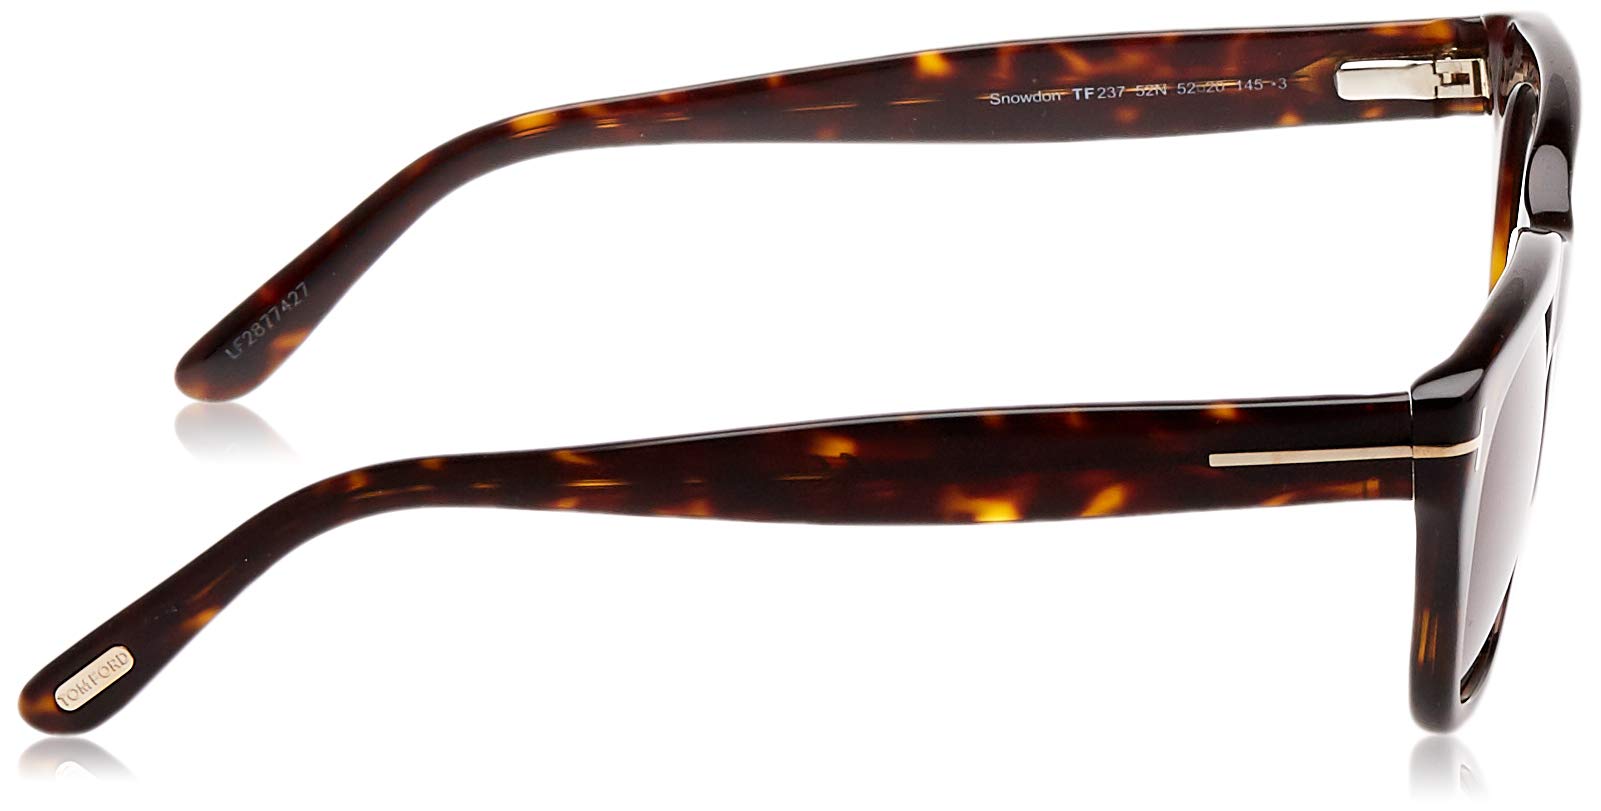 Mua Tom Ford Snowdon New Sunglasses trên Amazon Mỹ chính hãng 2023 |  Giaonhan247